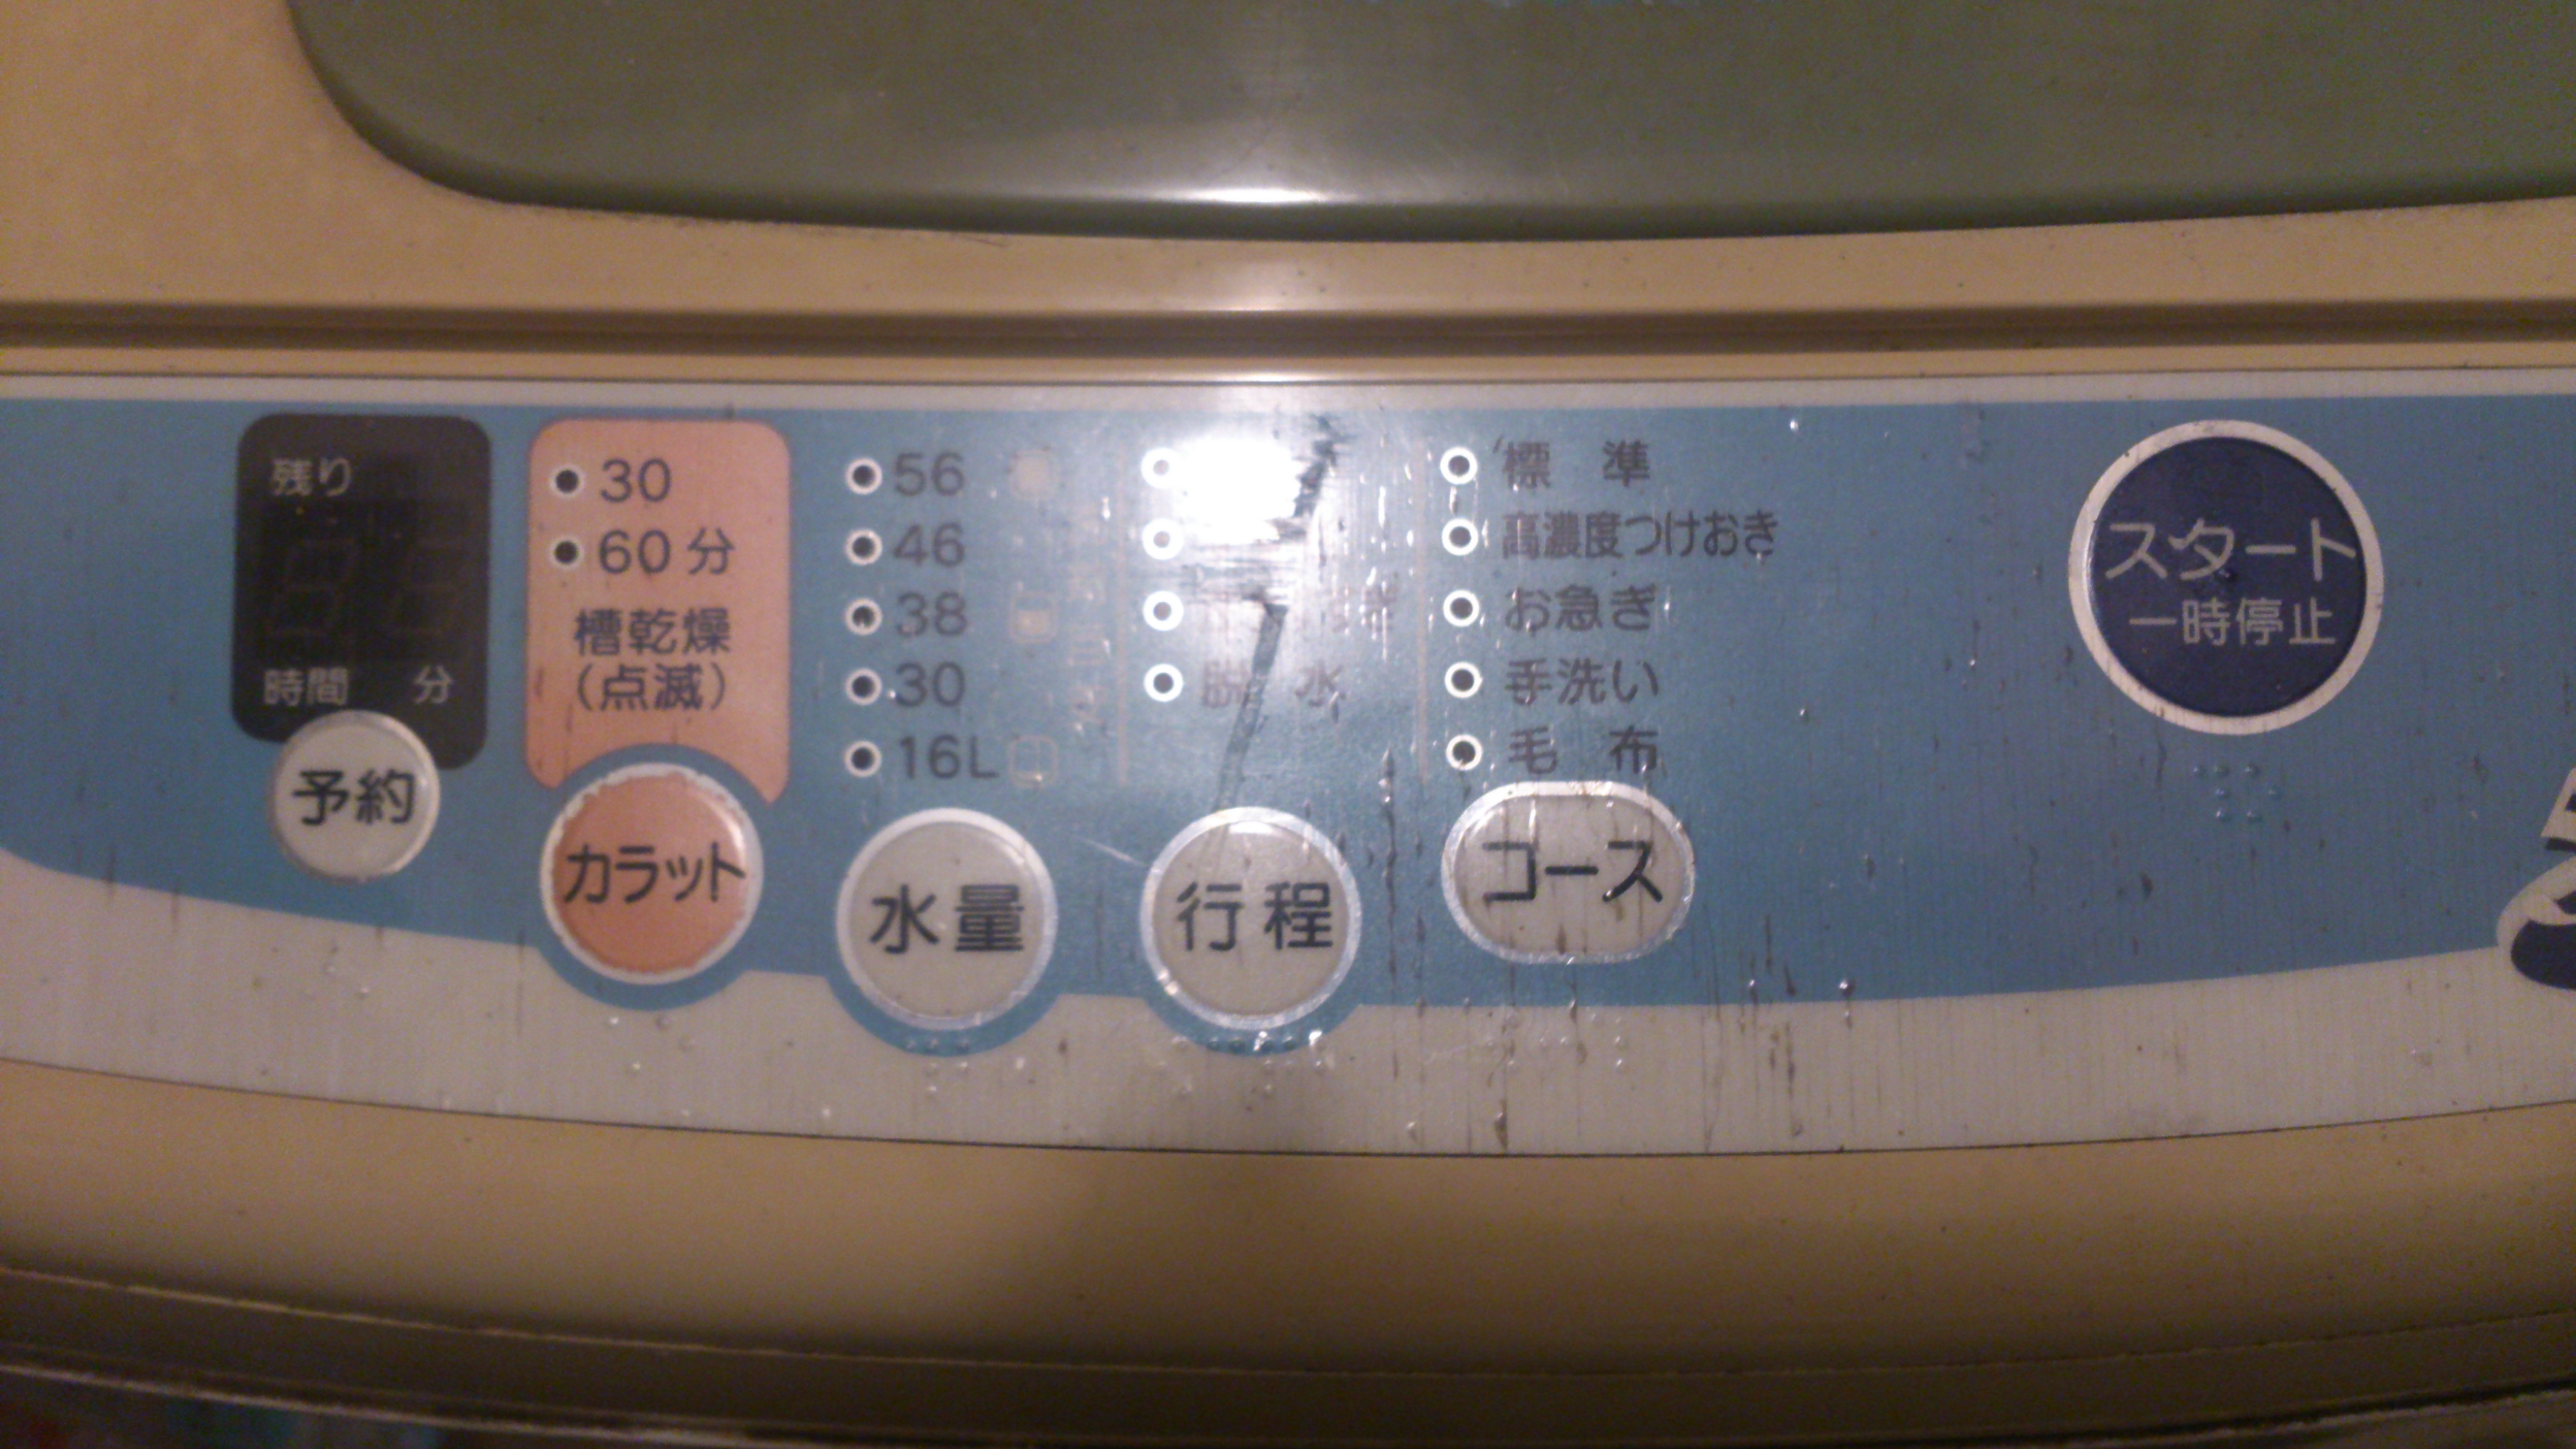 洗濯機の操作パネルです。